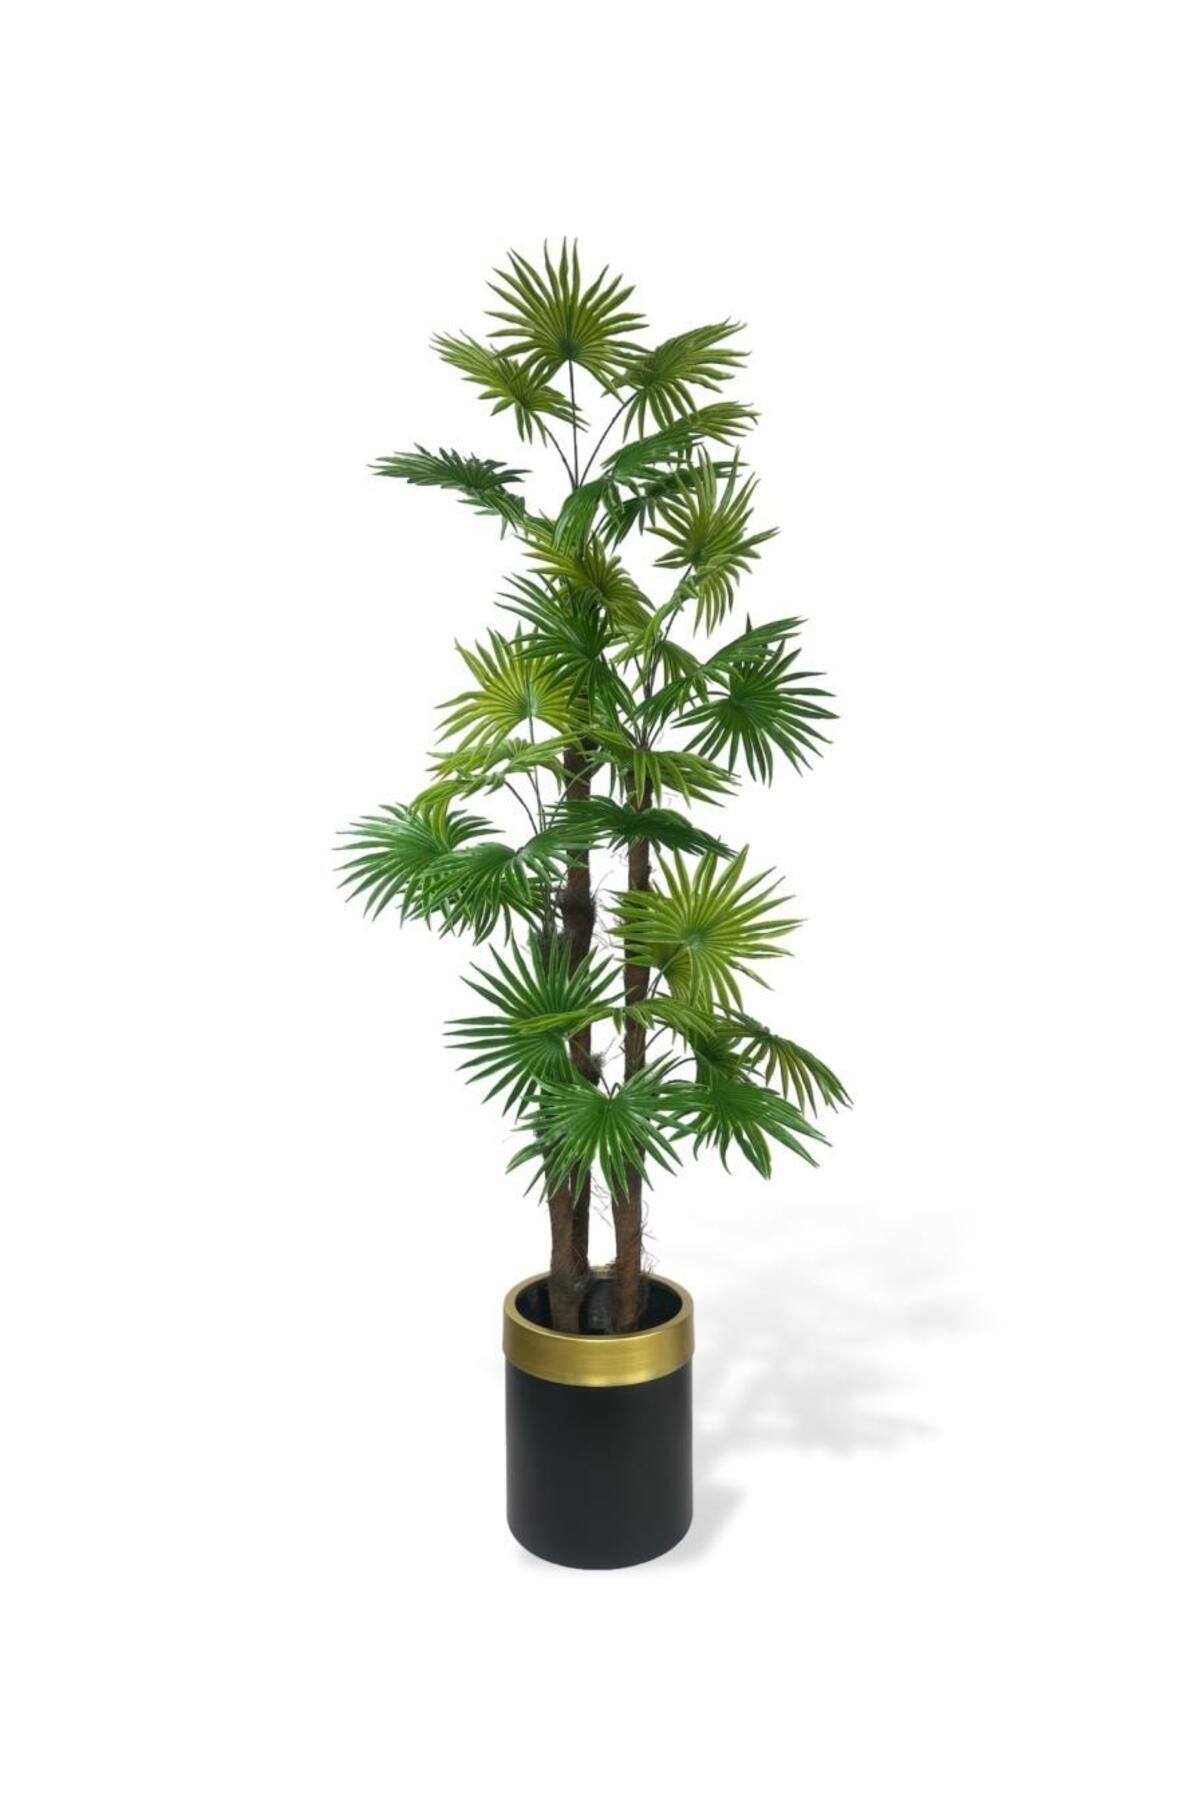 Nettenevime Yapay Ağaç Yelpaze Palmiye 4Katlı Fanpalm 32 Yaprak Altın Kemerli Siyah Saksıda 170*65cm